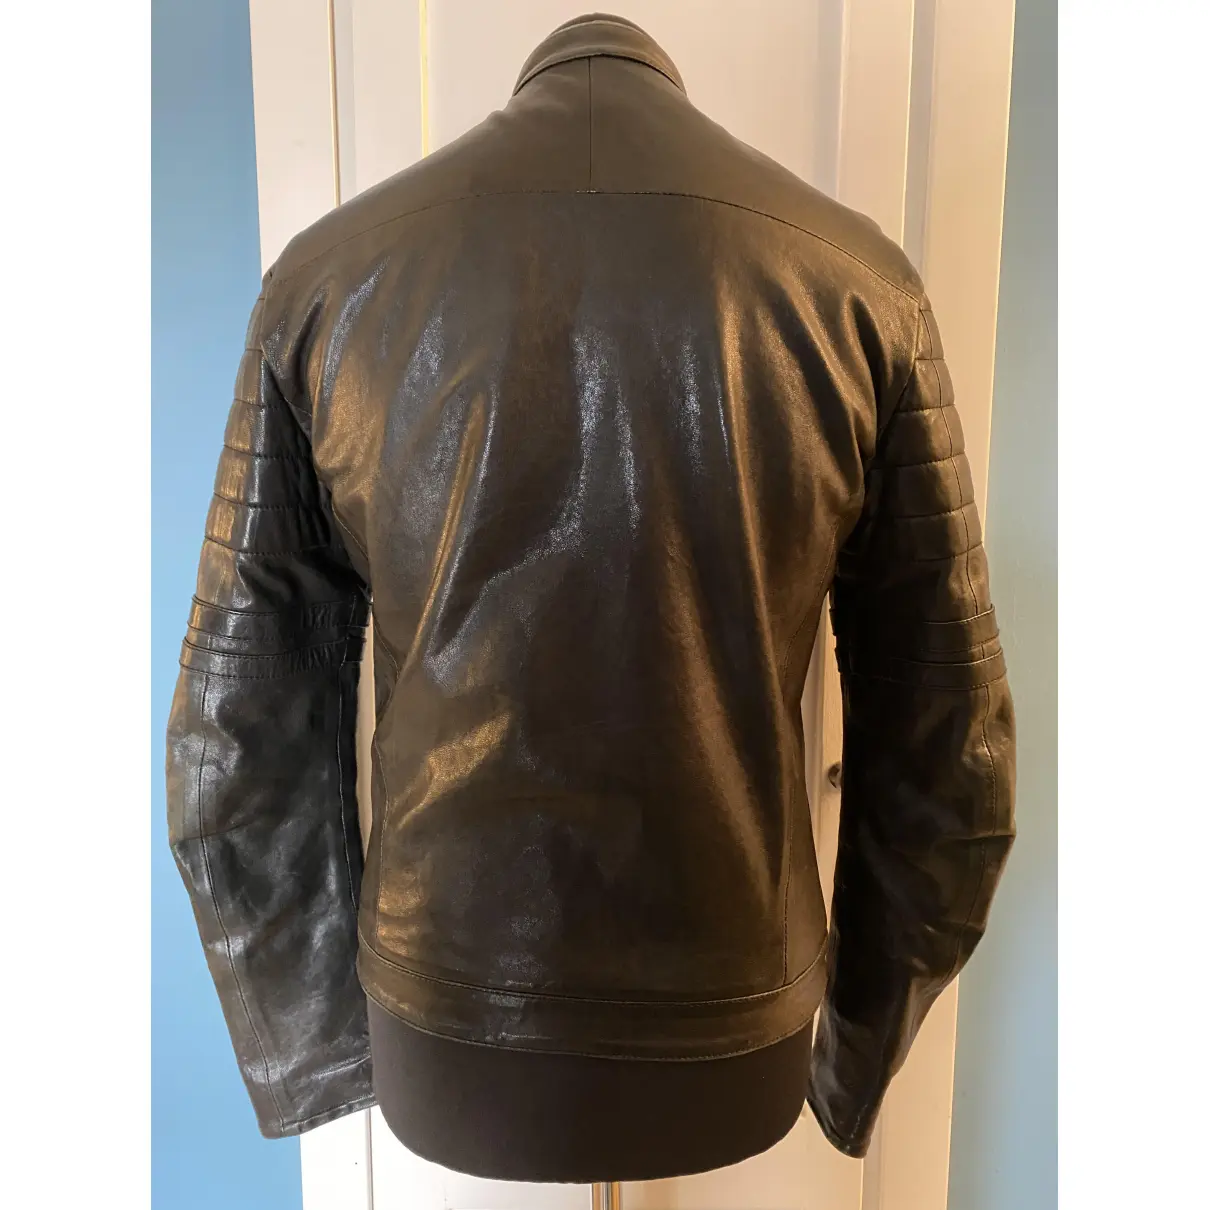 Buy Viktor & Rolf Leather jacket online - Vintage